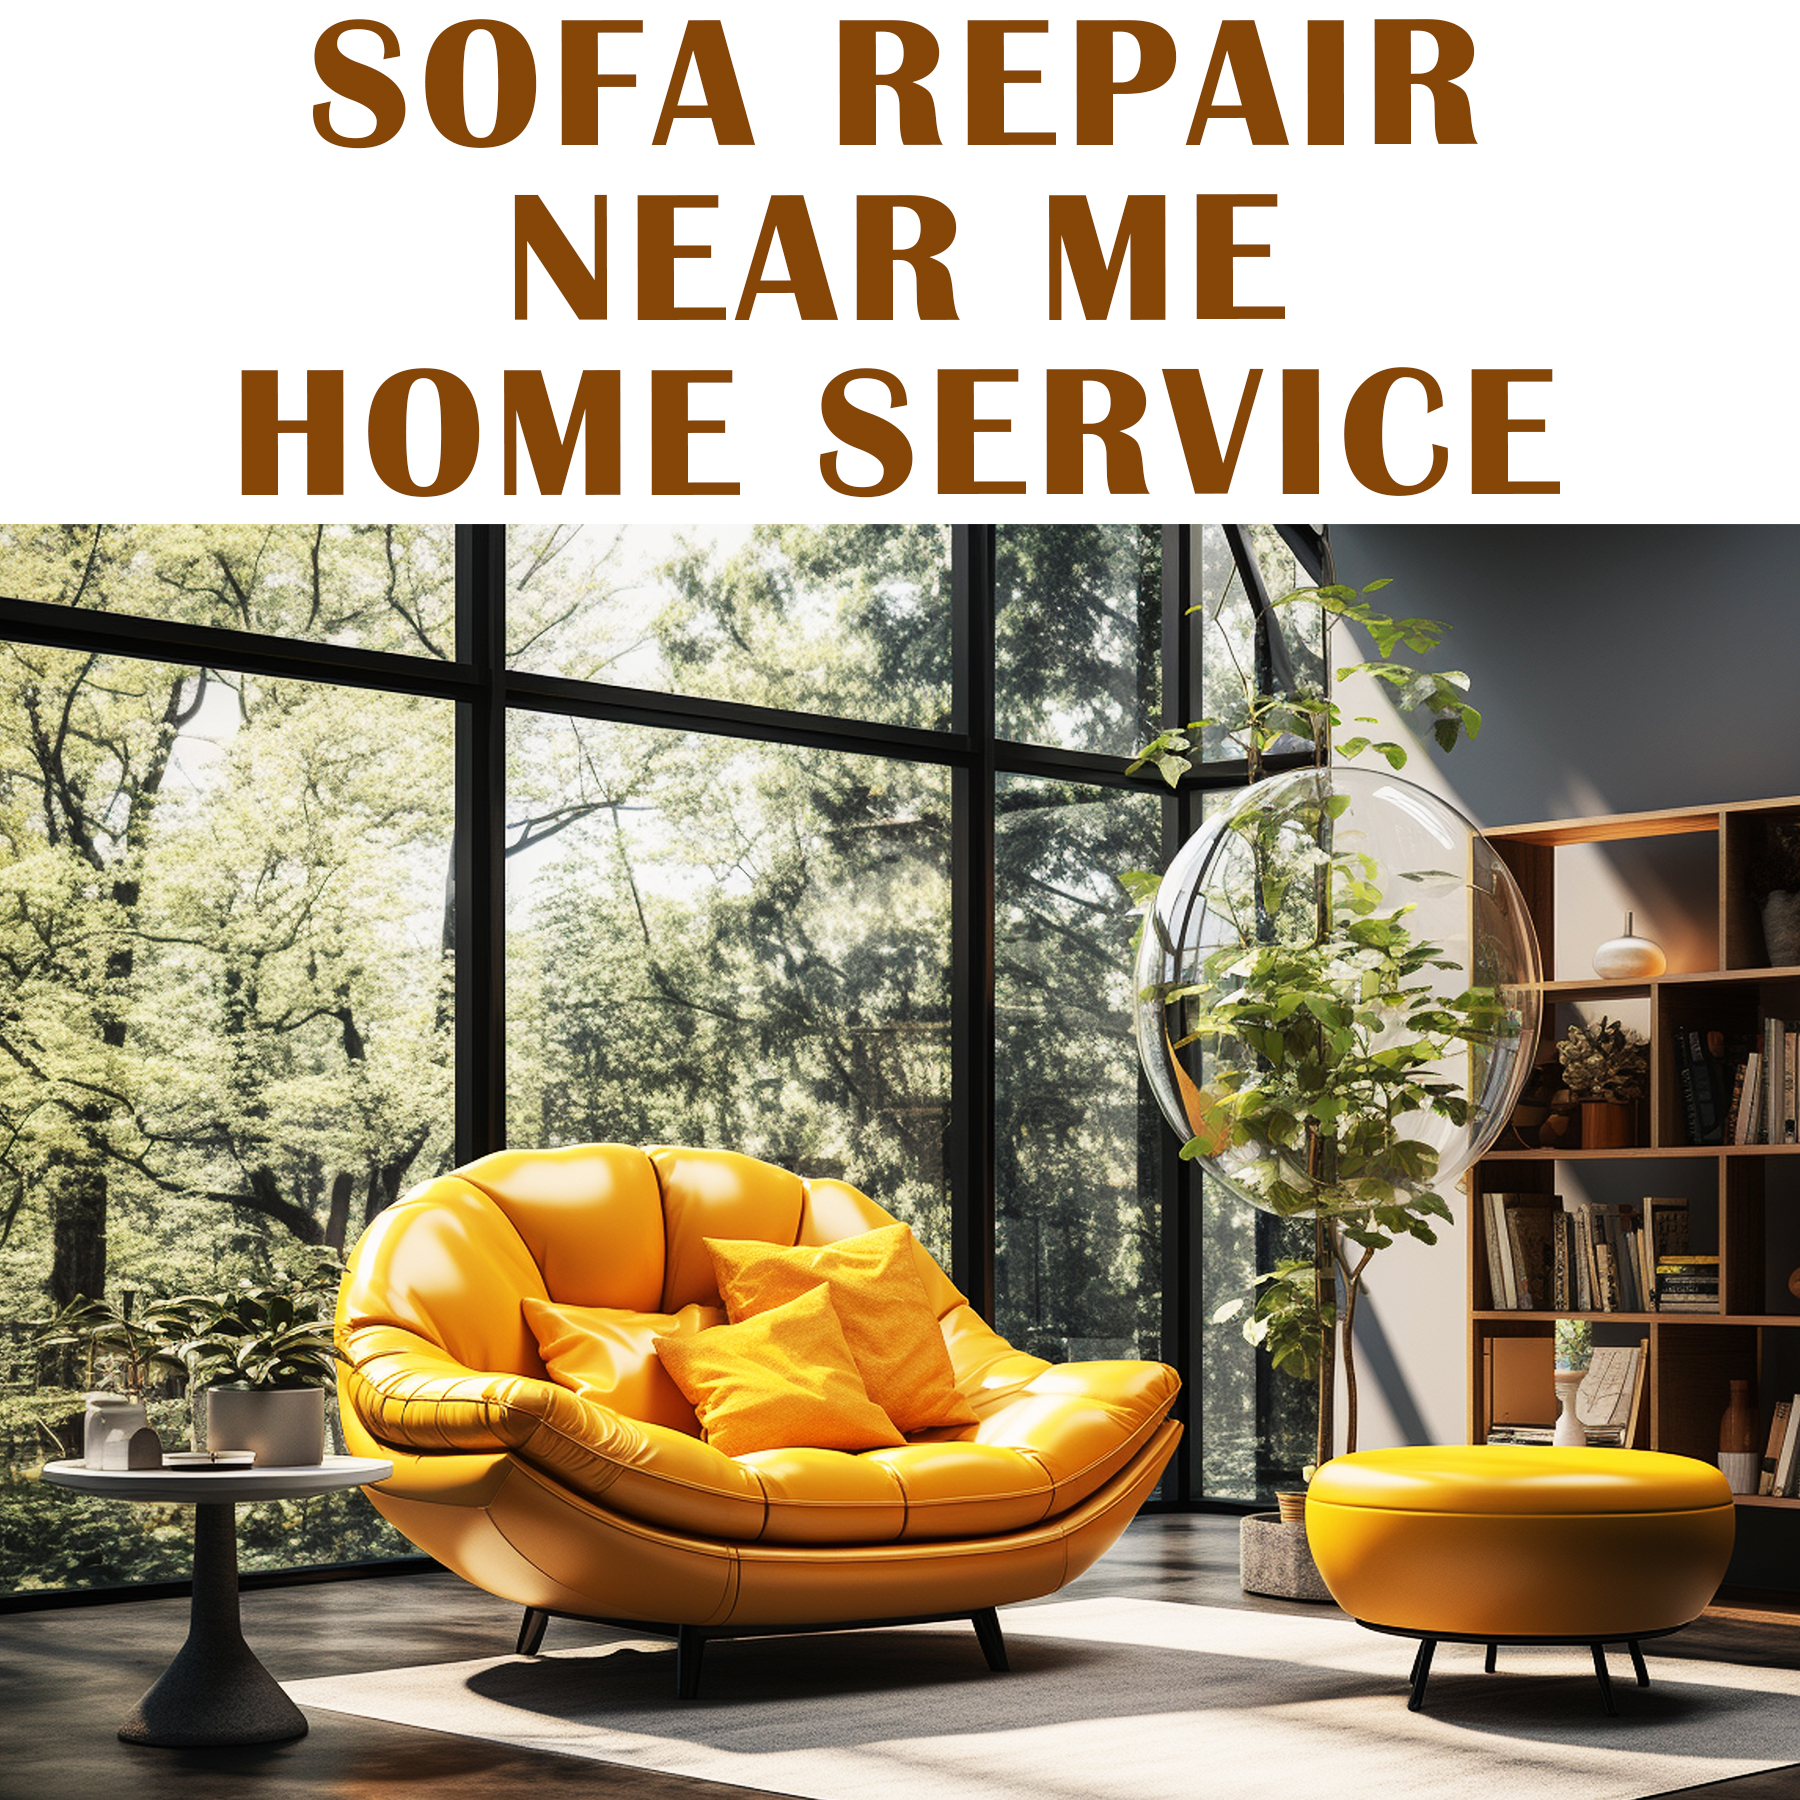 Sofa Repair Near Me Home Service